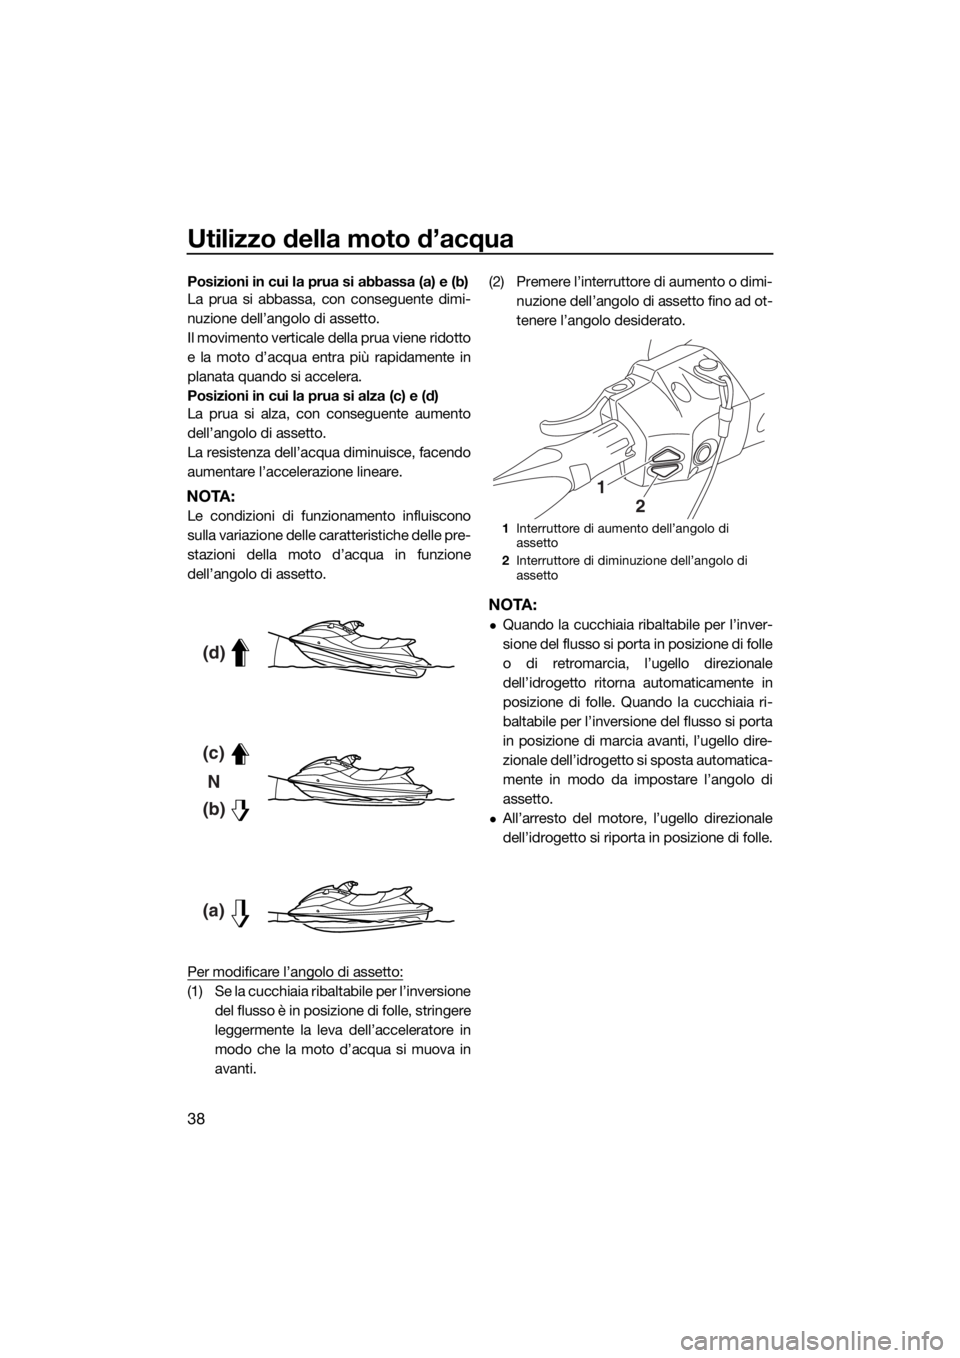 YAMAHA FX HO 2016  Manuale duso (in Italian) Utilizzo della moto d’acqua
38
Posizioni in cui la prua si abbassa (a) e (b)
La prua si abbassa, con conseguente dimi-
nuzione dell’angolo di assetto.
Il movimento verticale della prua viene ridot